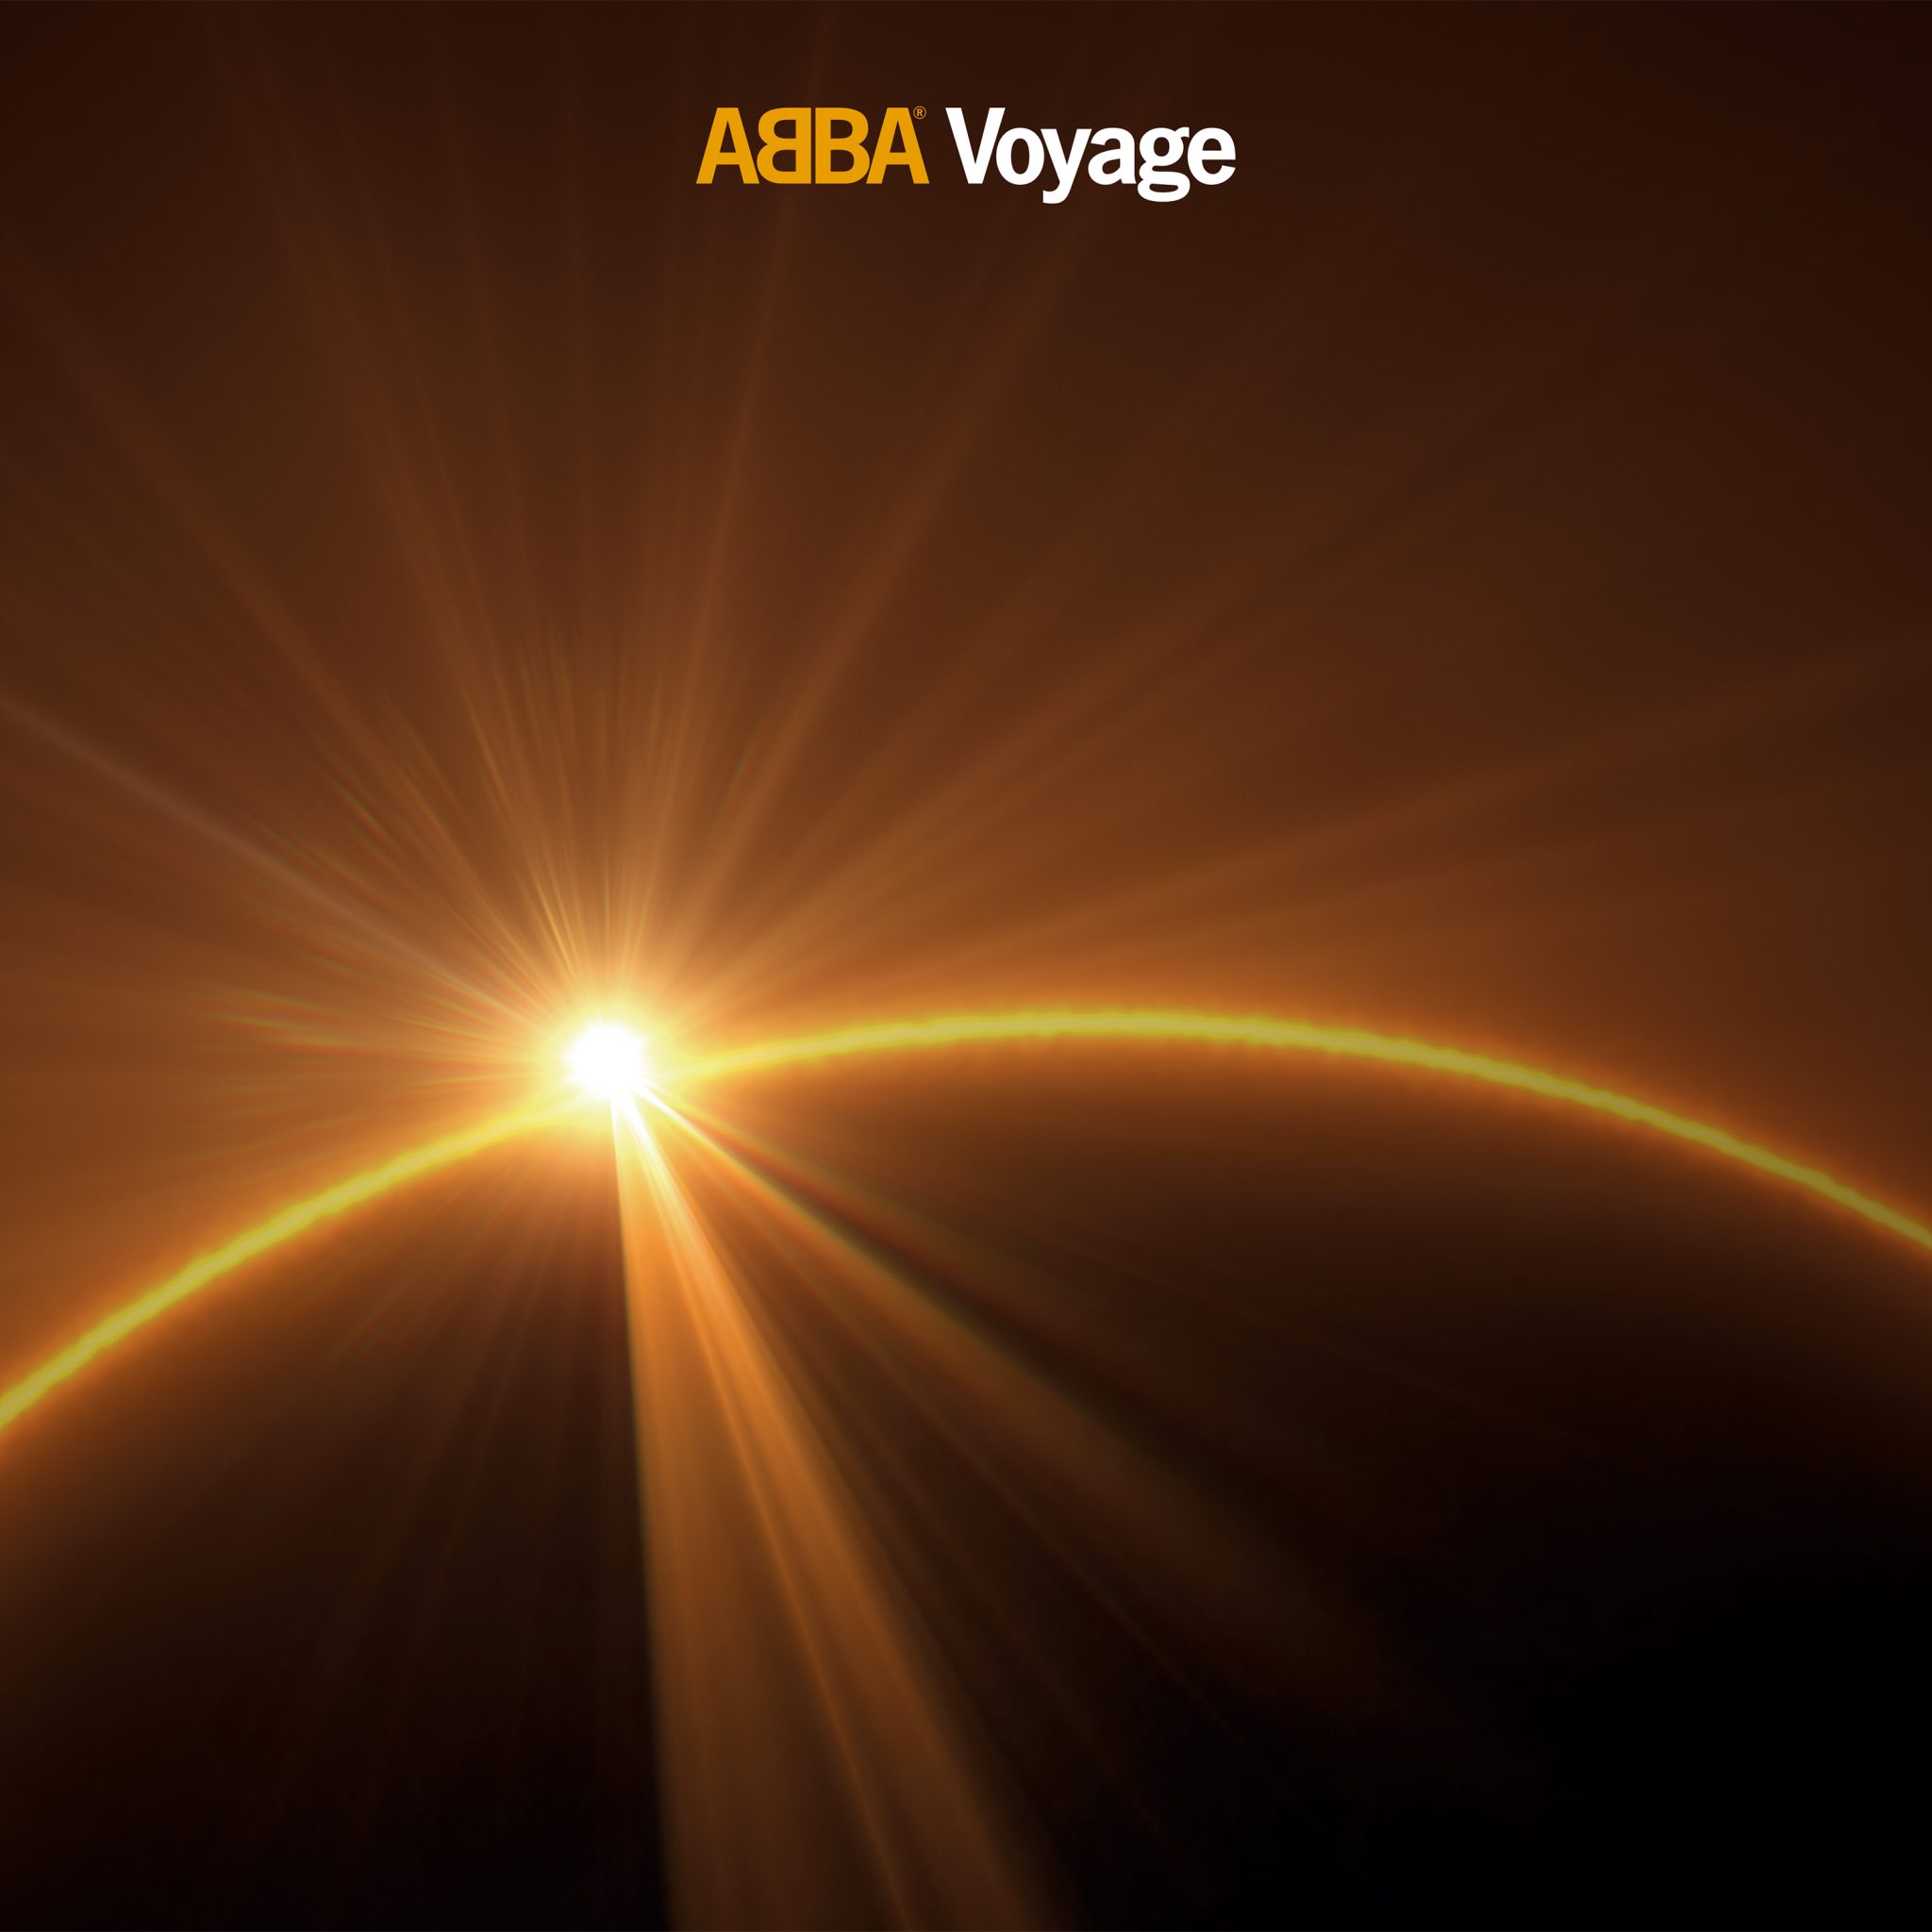 ABBA Voyage album cover